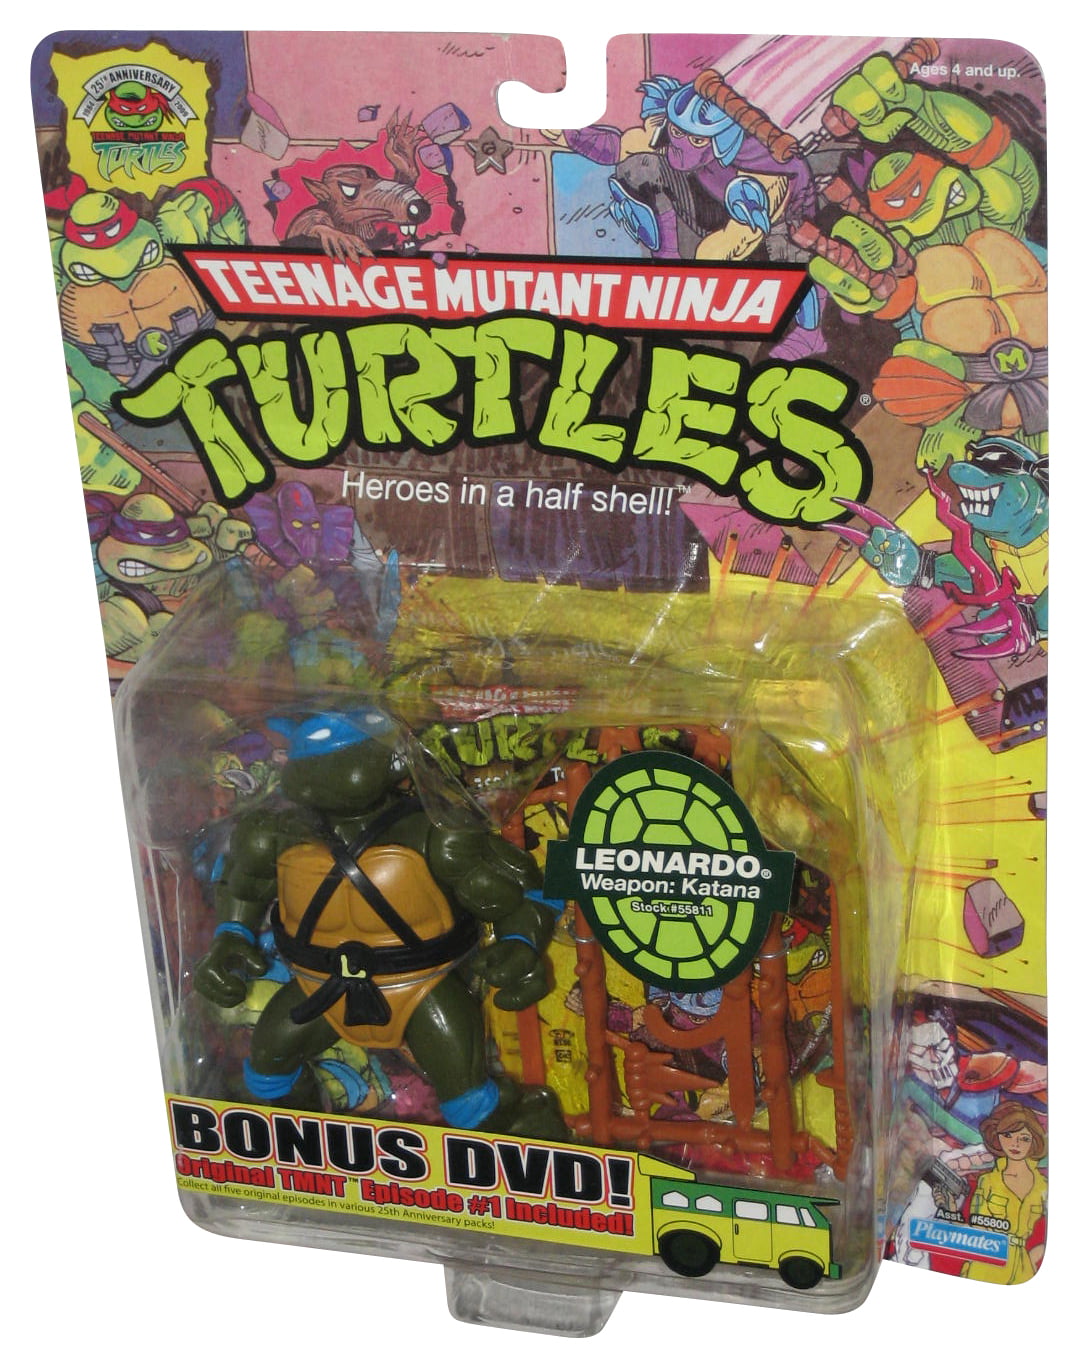 Lot 2 VTECH INNOTAB GAMES Teenage Mutant Ninja Turtles & Spiderma Lot#26 